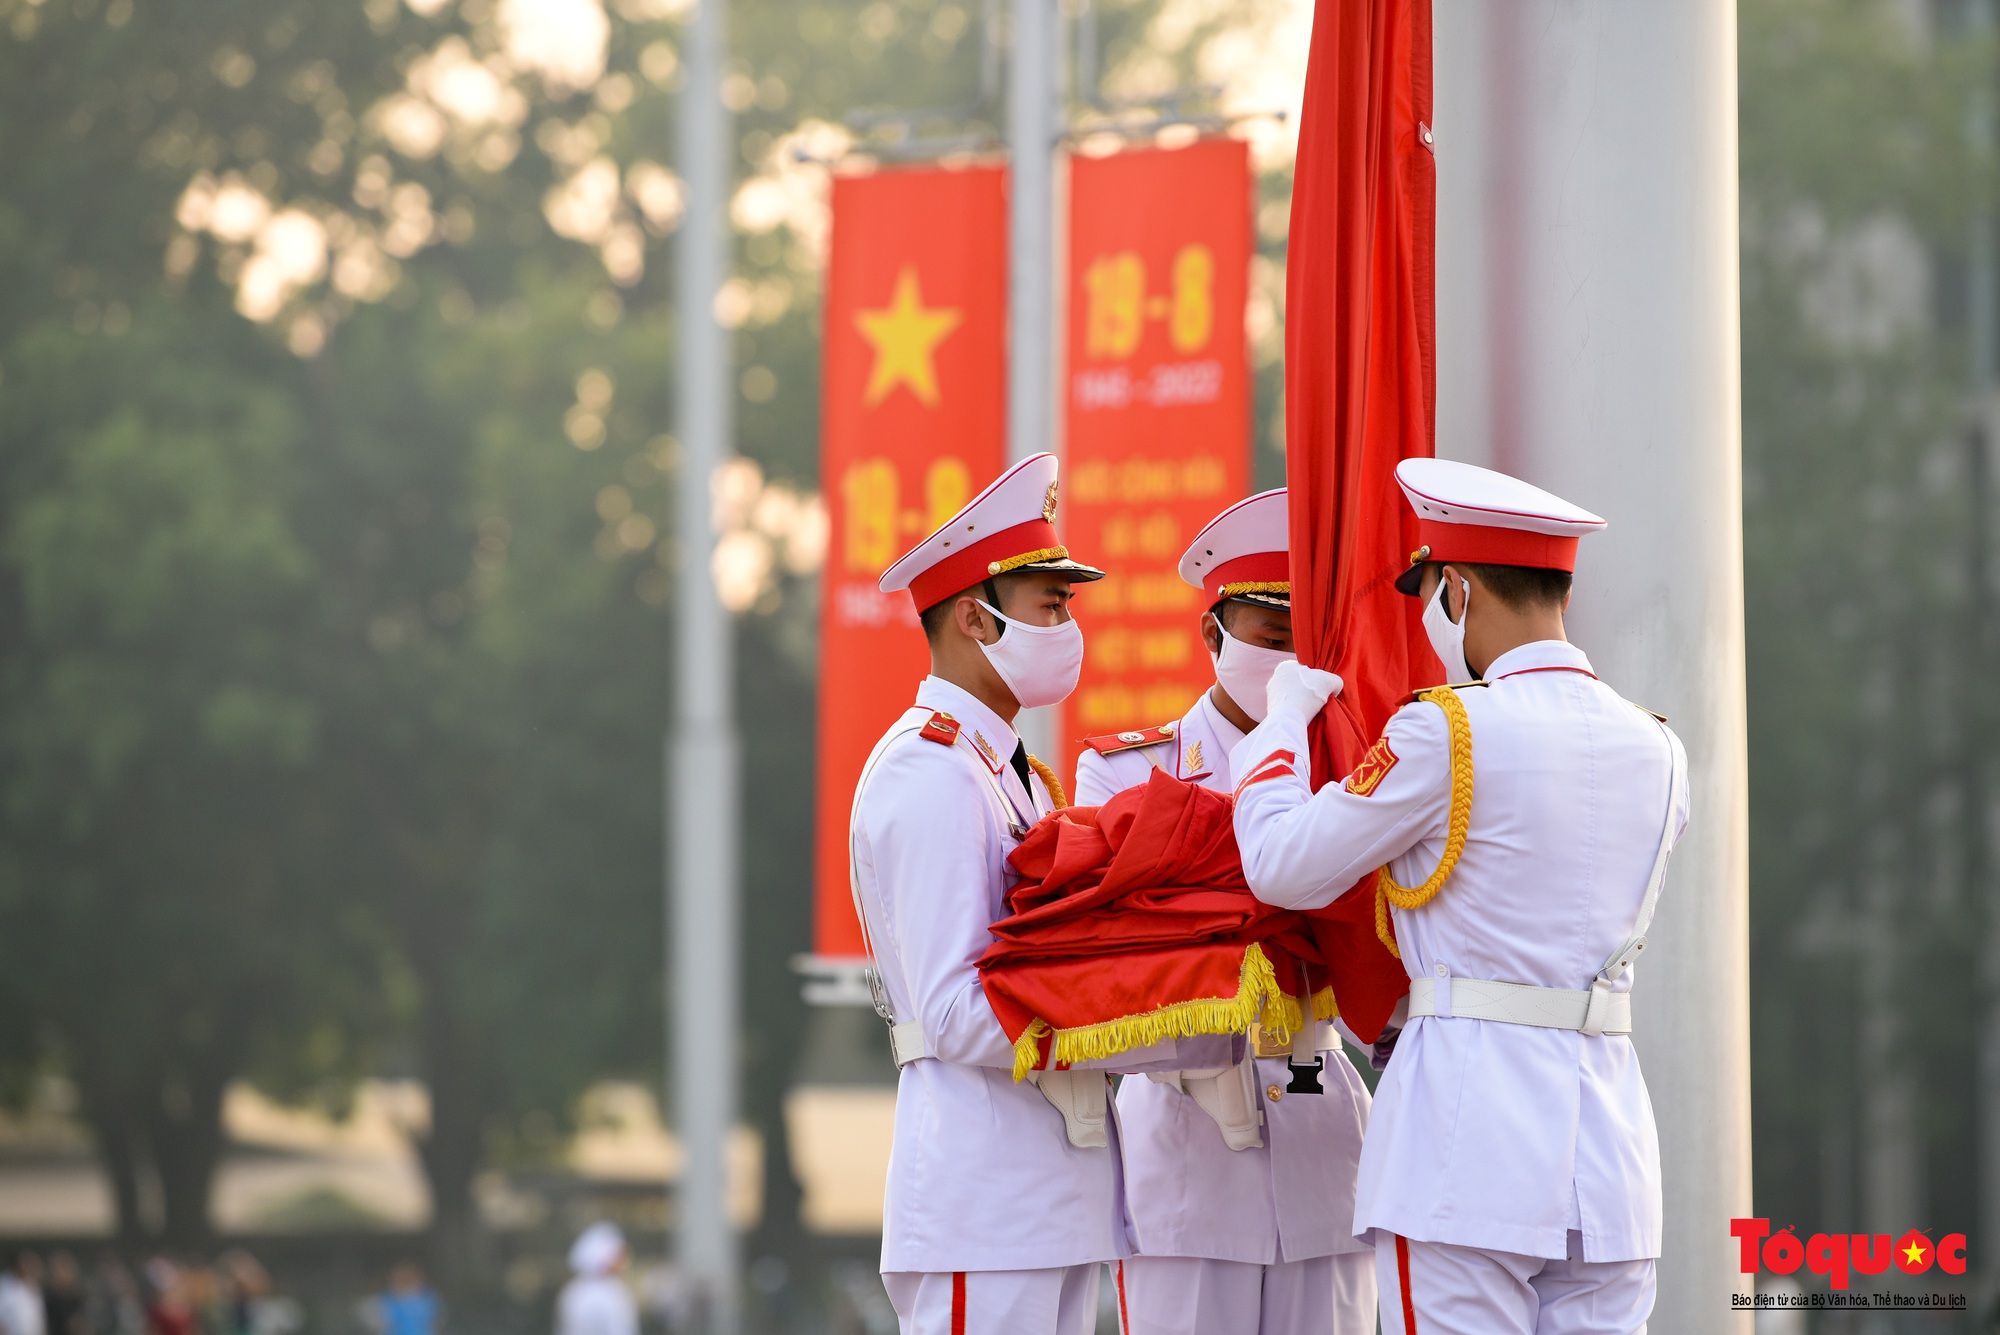 Thiêng liêng nghi Lễ thượng cờ tại Quảng Trường Ba Đình những ngày tháng 9 lịch sử - Ảnh 9.